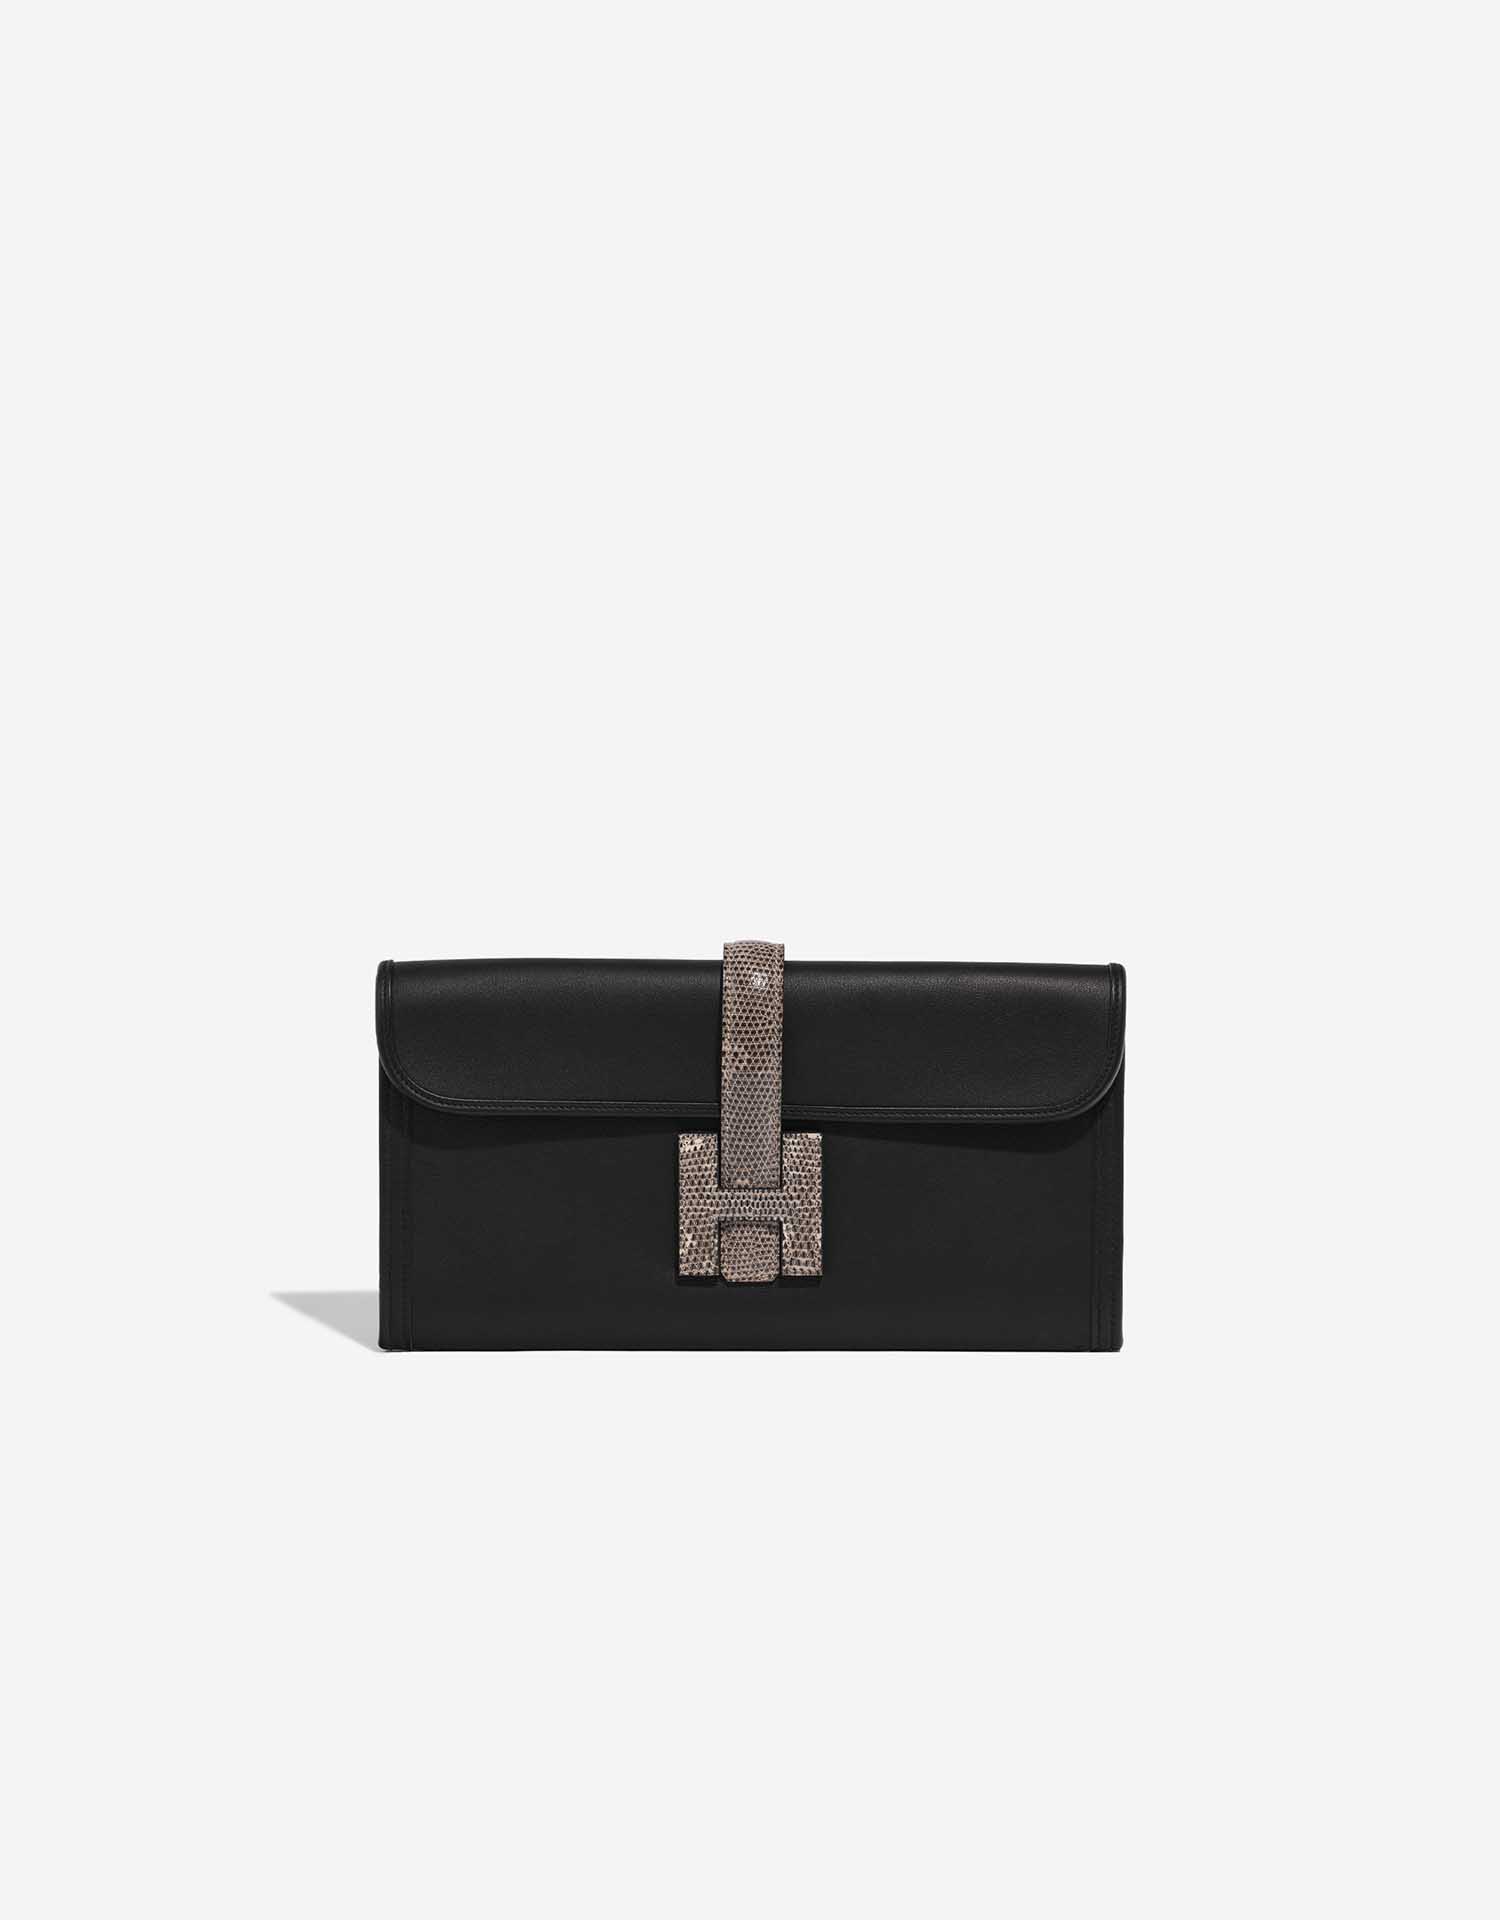 Hermès Jige pouch in black box leather